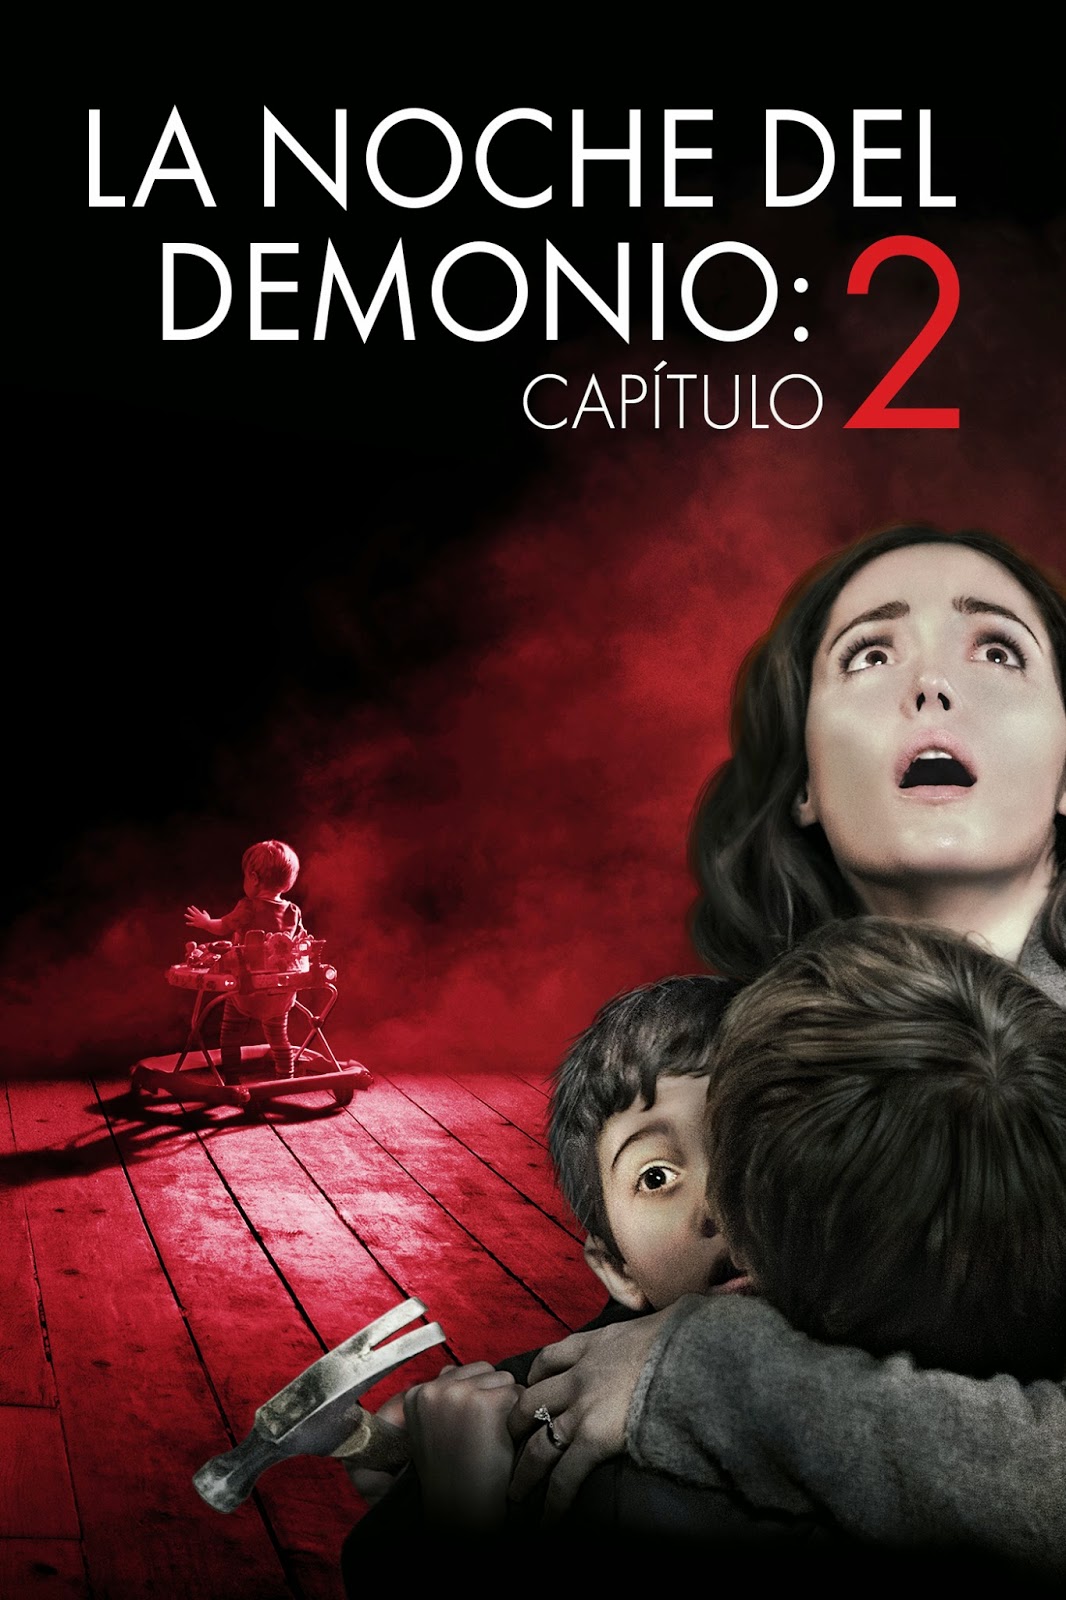 La Noche del Demonio: Capitulo 2 (2013) ~ La Cueva de Gabriquel - Imagenes De La Pelicula De La Noche Del Demonio